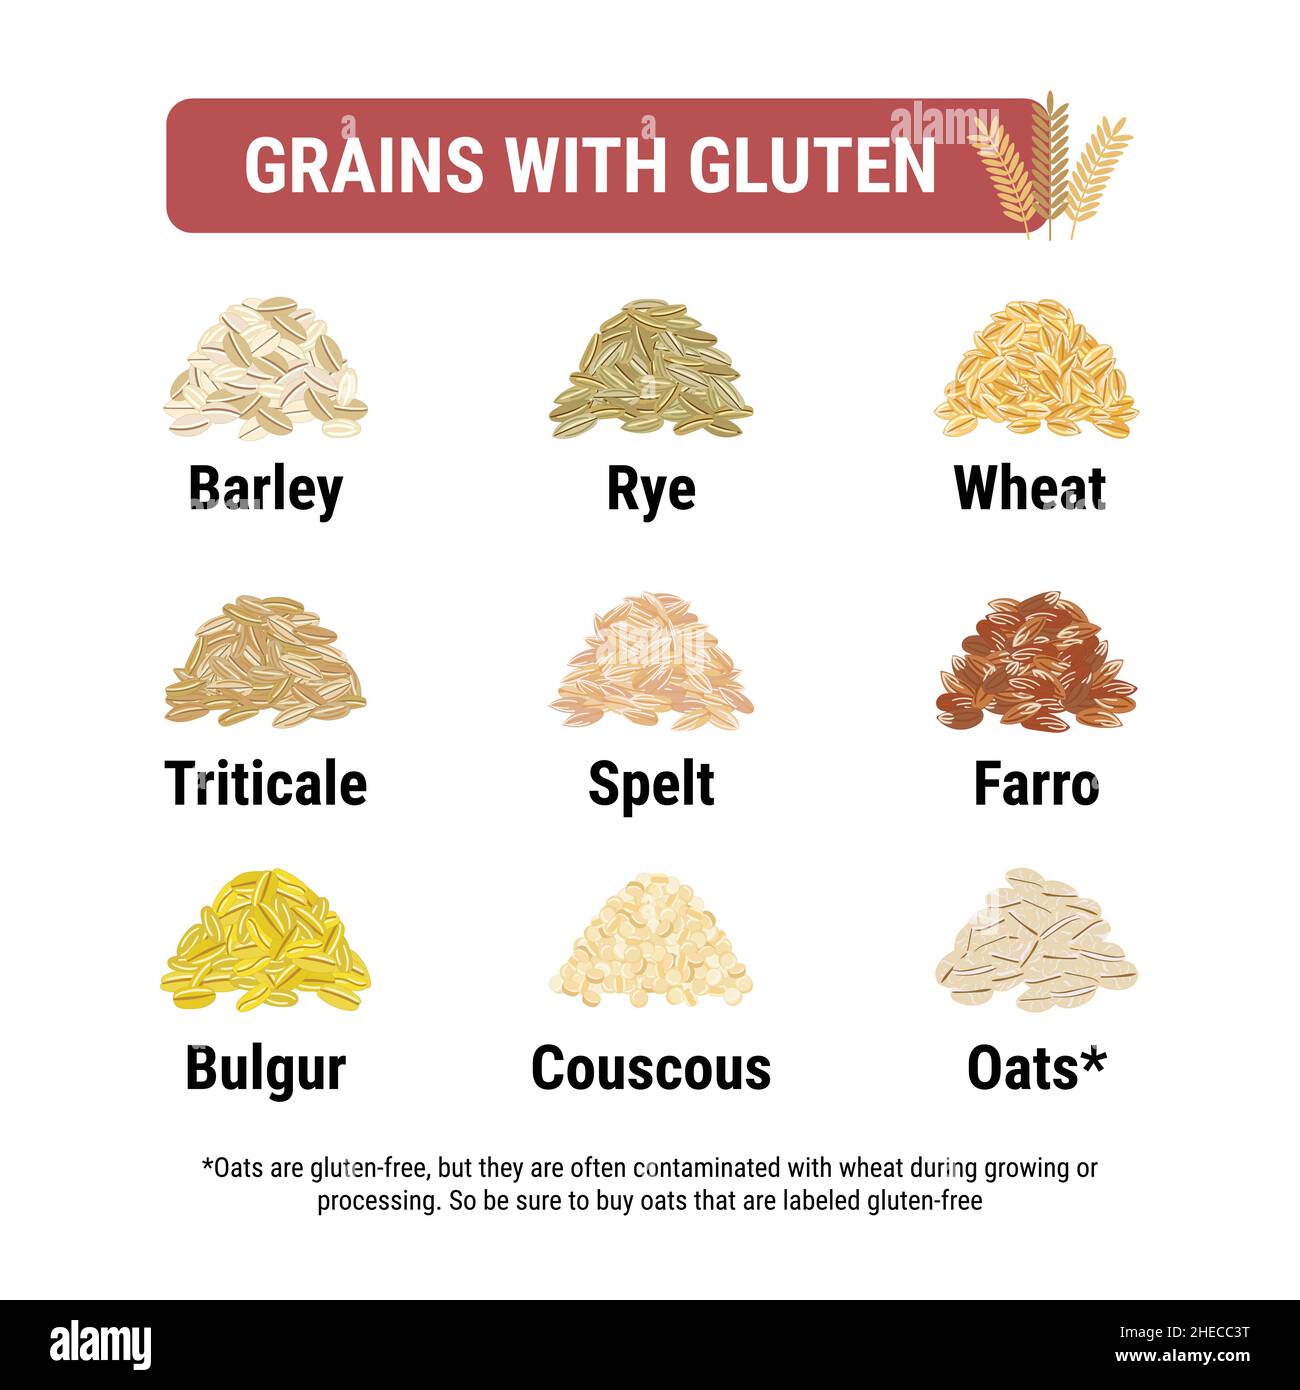 Infografica priva di glutine e contenente grani di glutine. Cereali e semi sani e malsani dalla celiachia. Formato quadrato. Frumento, orzo, segale e. Illustrazione Vettoriale